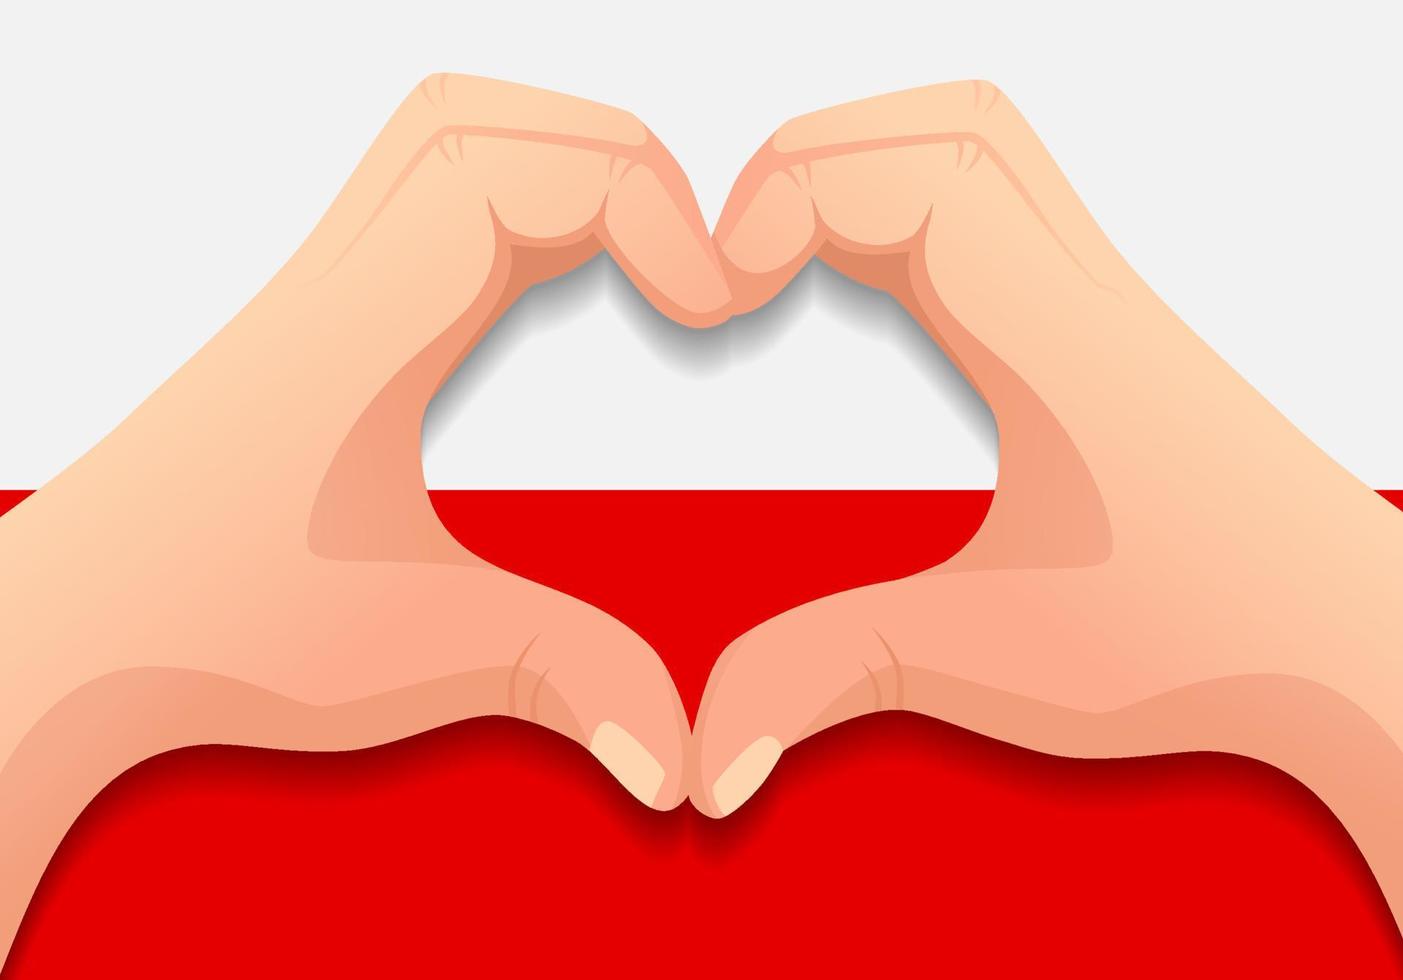 Poland flag and hand heart shape vector